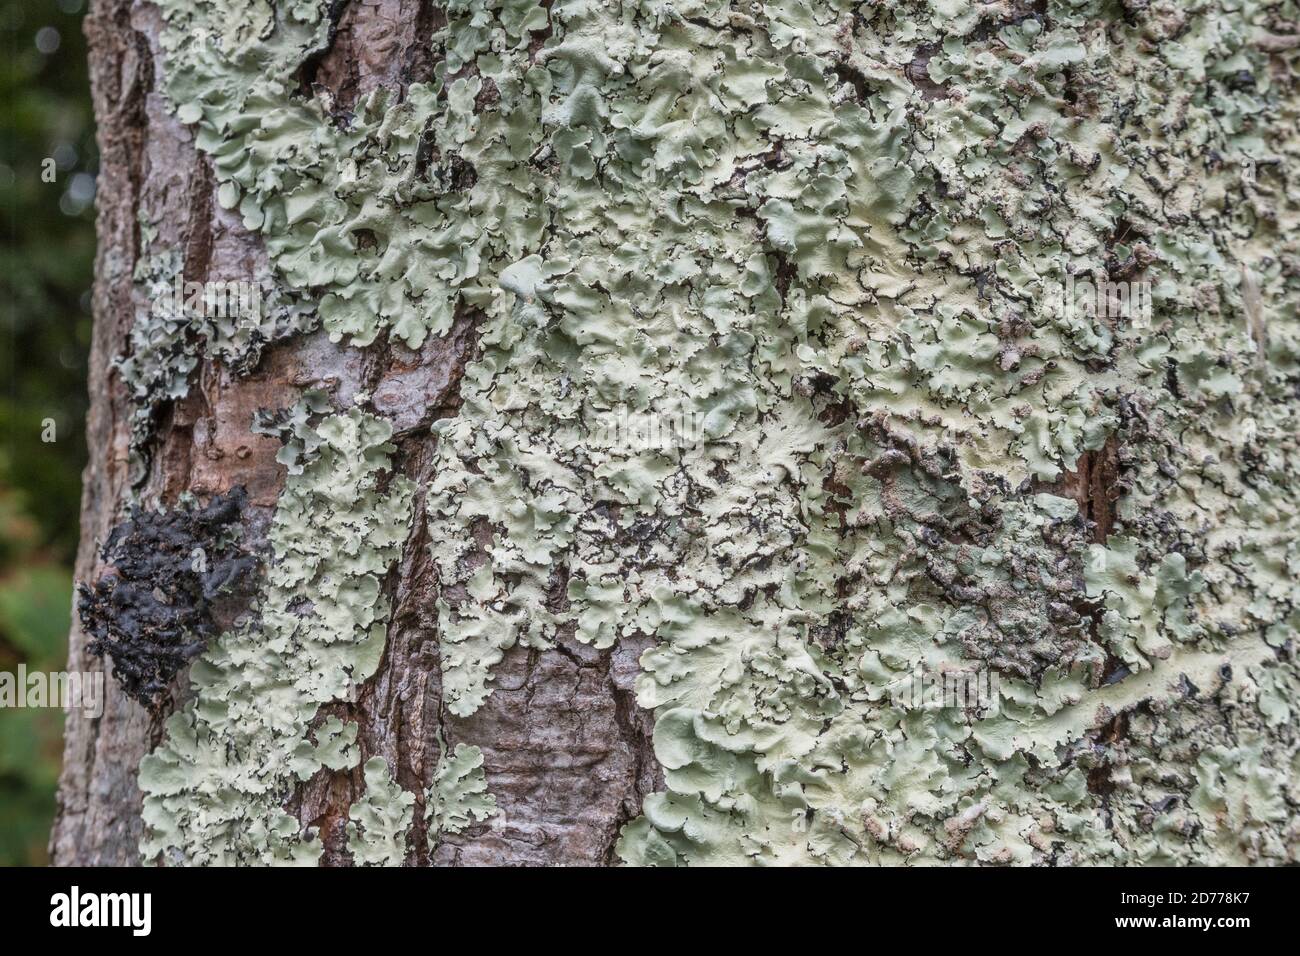 Superficie di tronco di albero coperto con licheni fogliosi verde pallido che crescono sulla corteccia. Licheni inglesi, licheni piatti lievitati, ricoperti di licheni. Foto Stock